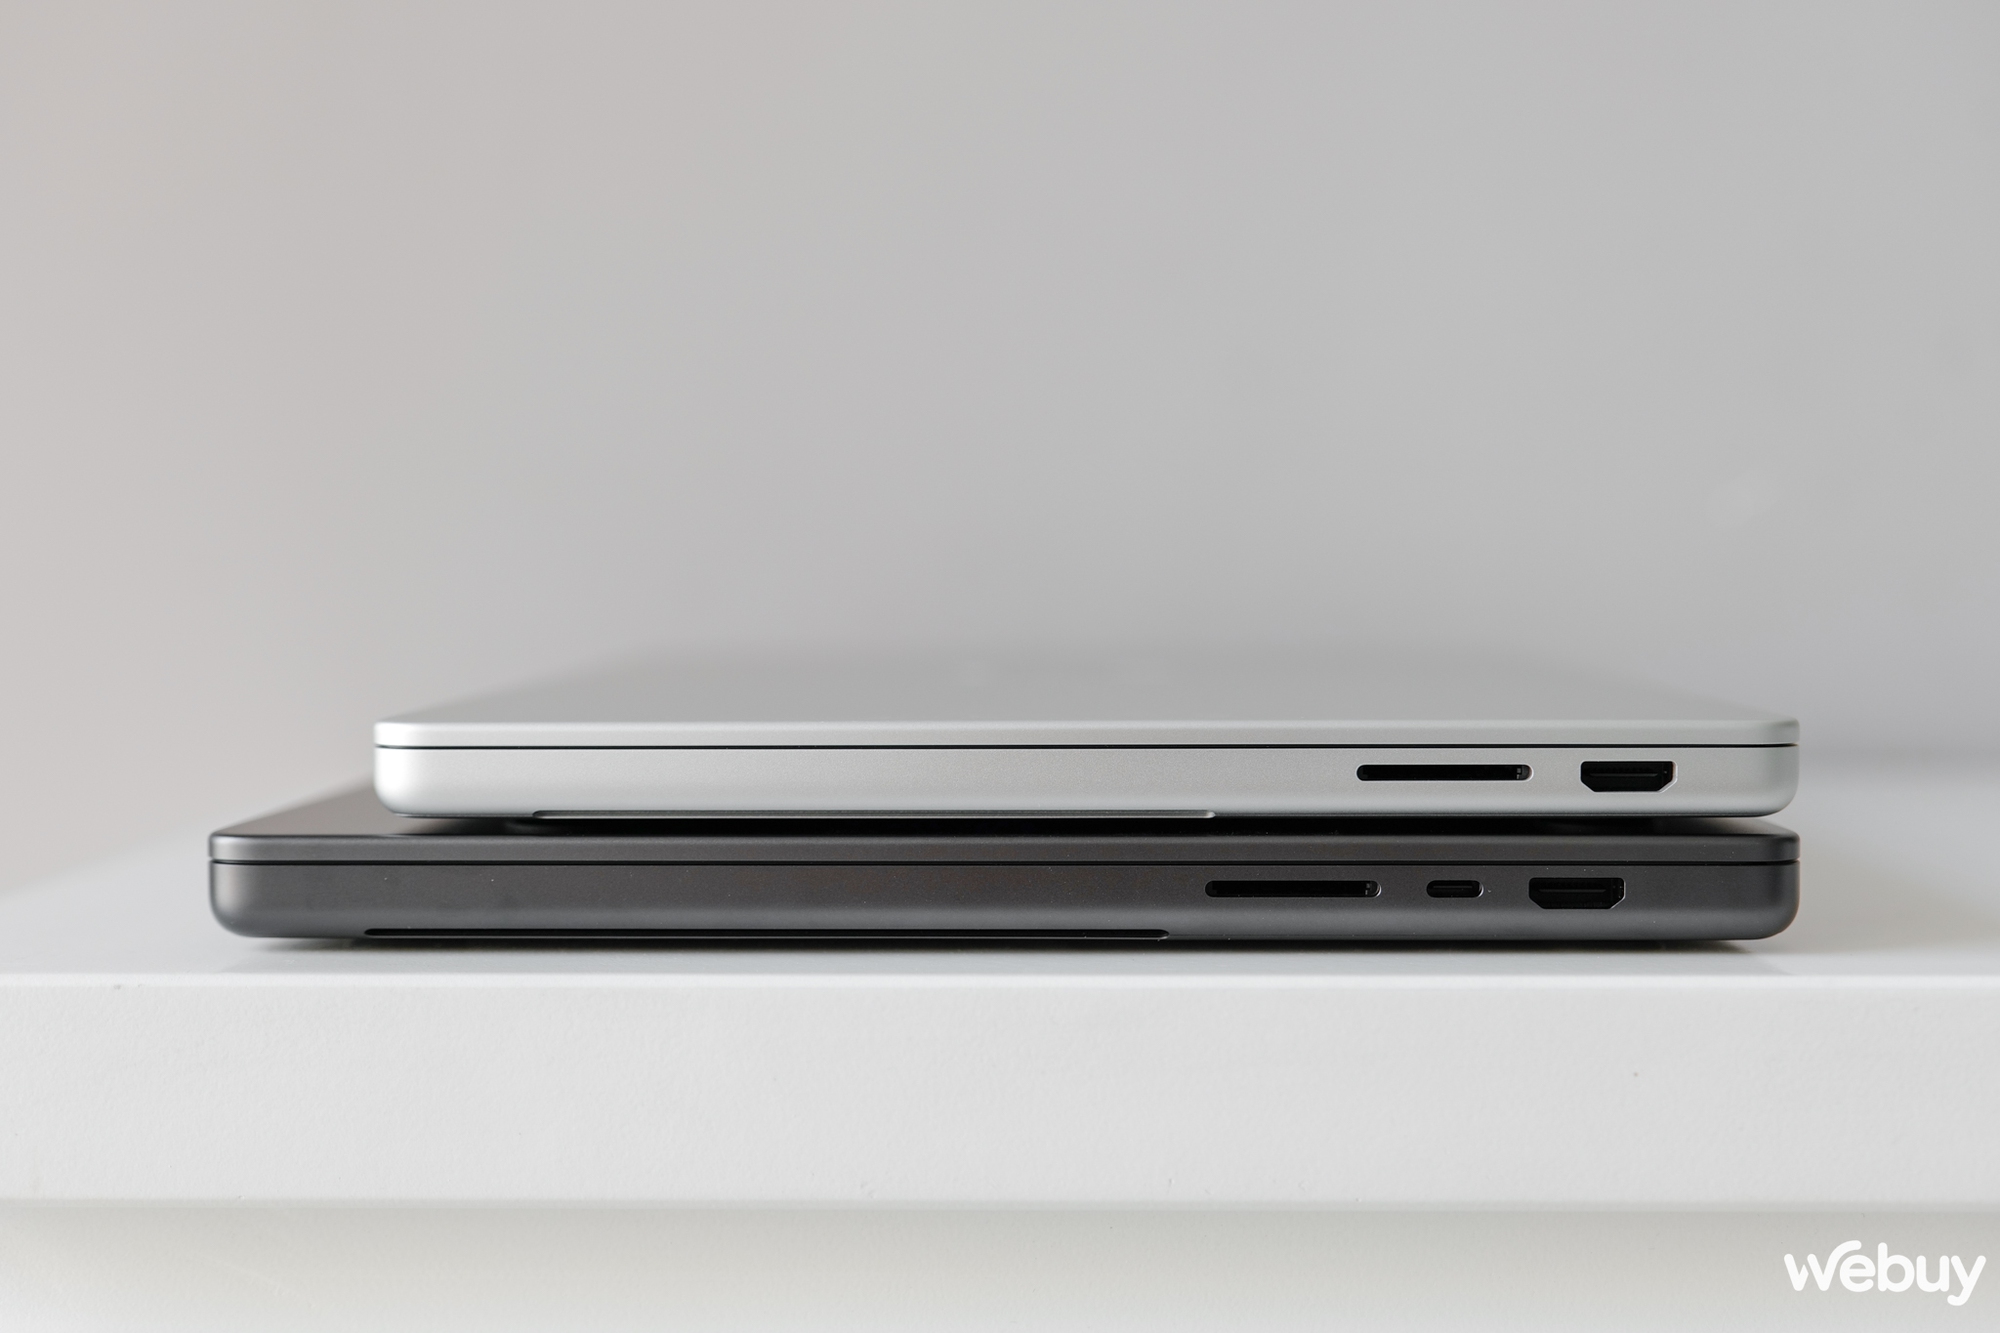 Mở hộp bộ đôi MacBook Pro M3 mới: Có thêm màu đen cực đẹp, hiệu năng vô đối, giá chính hãng từ 39.99 triệu đồng- Ảnh 22.